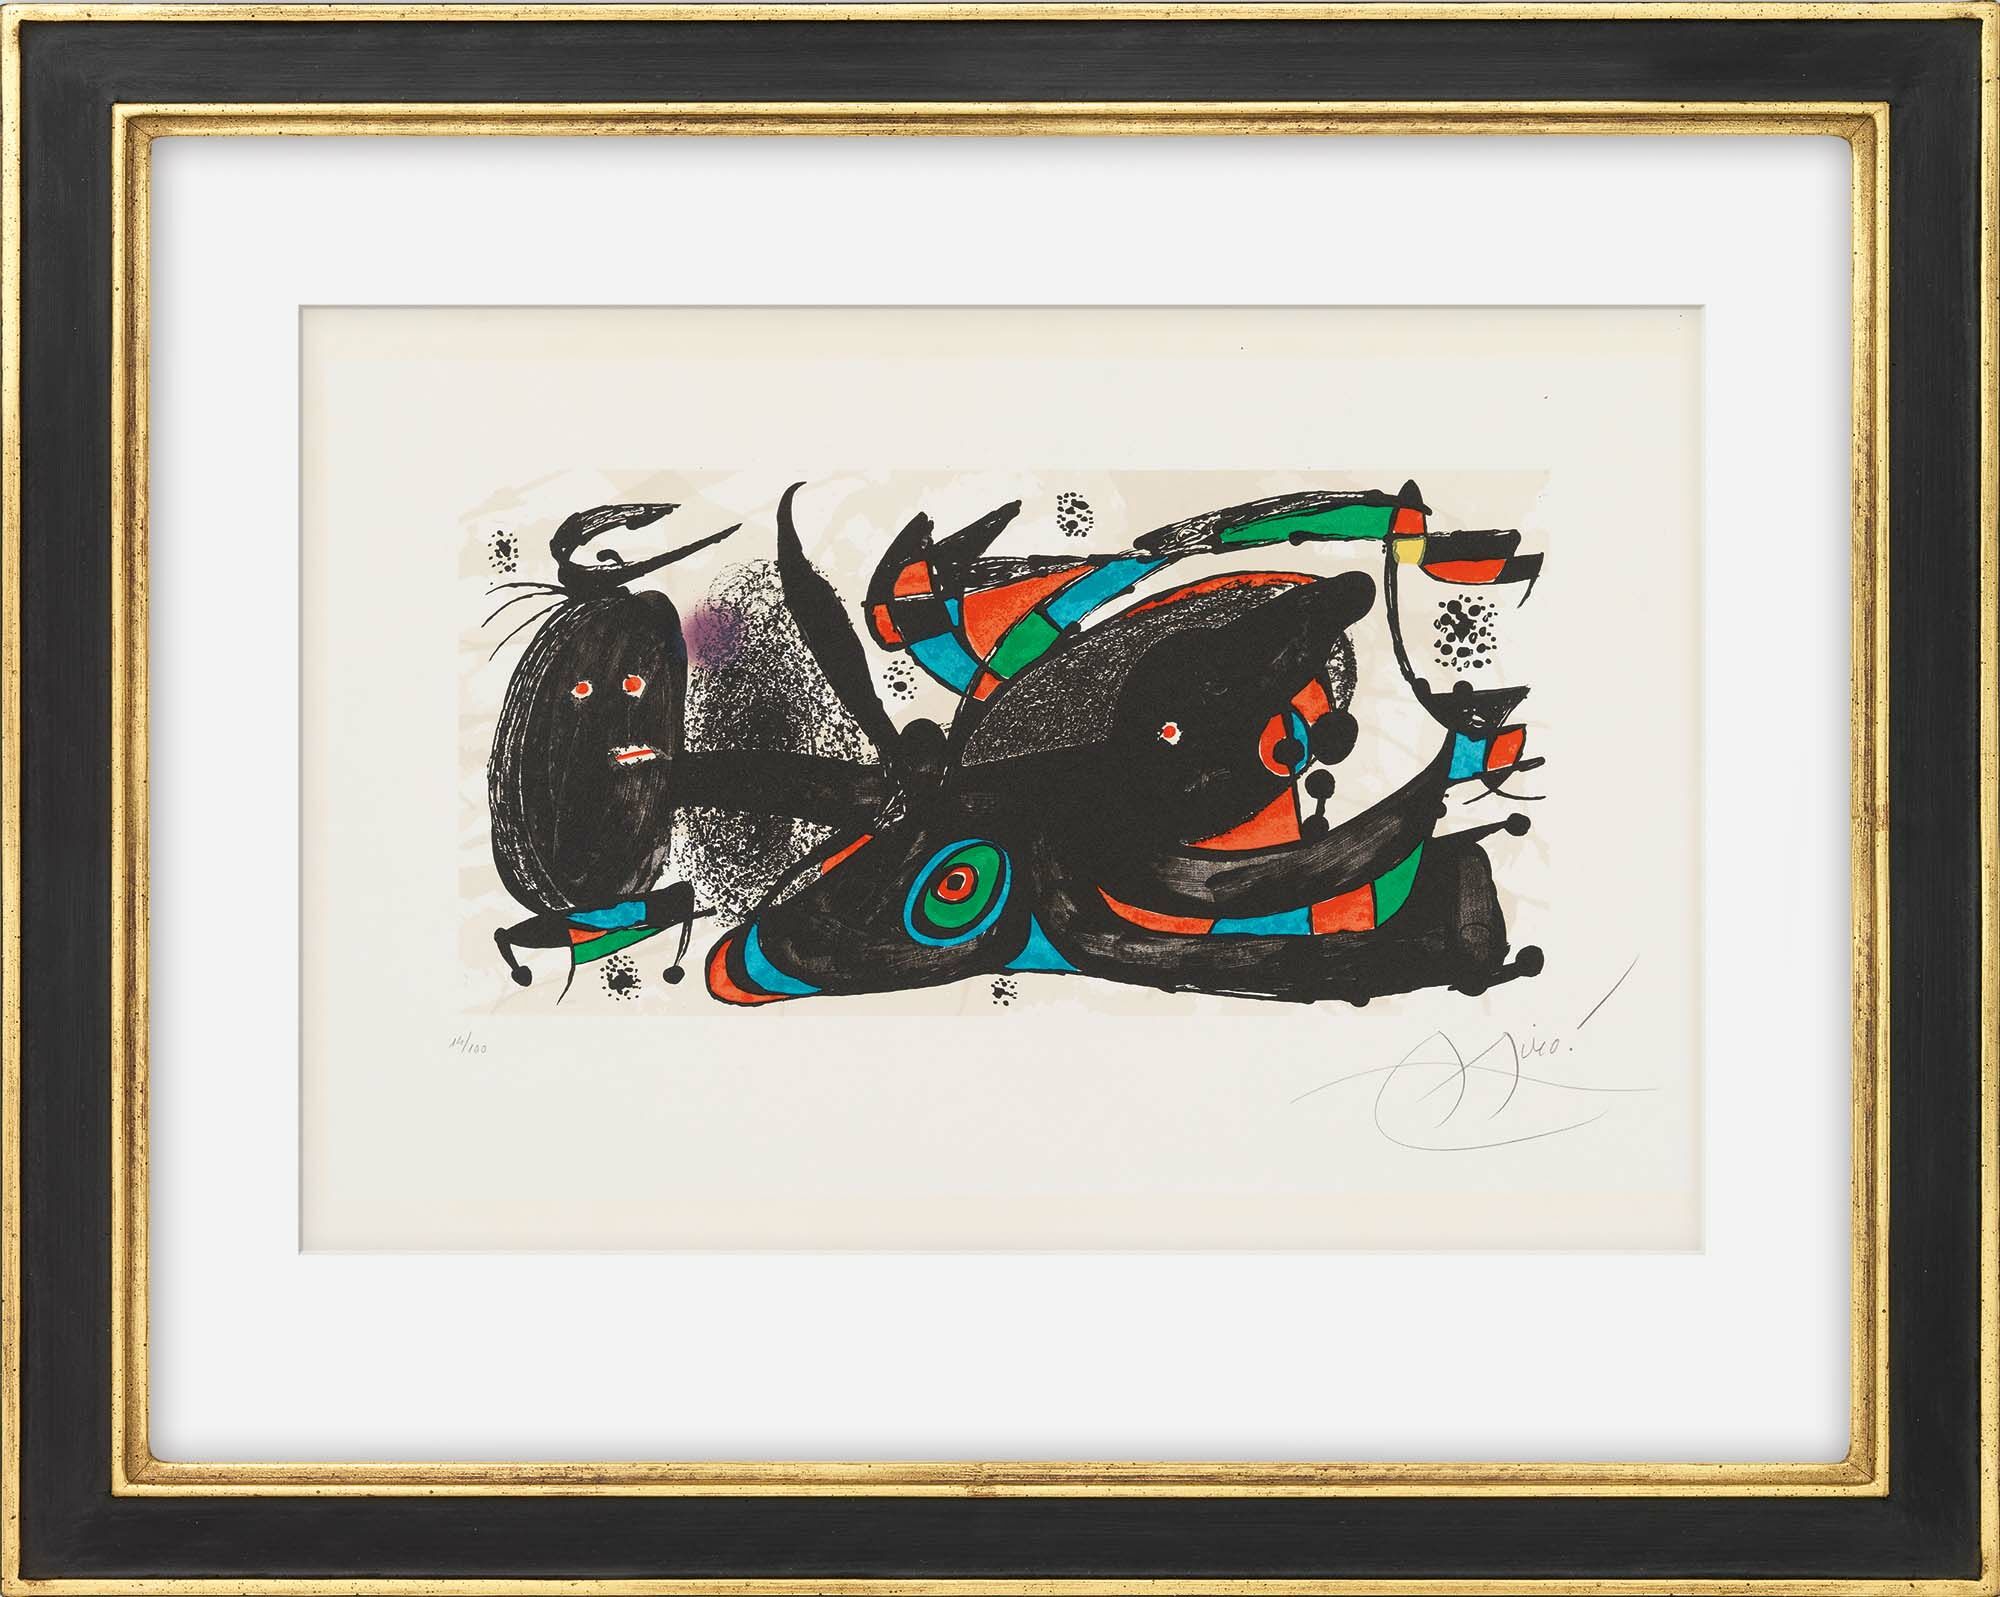 Billede "Miro som skulptør" (1974) von Joan Miró